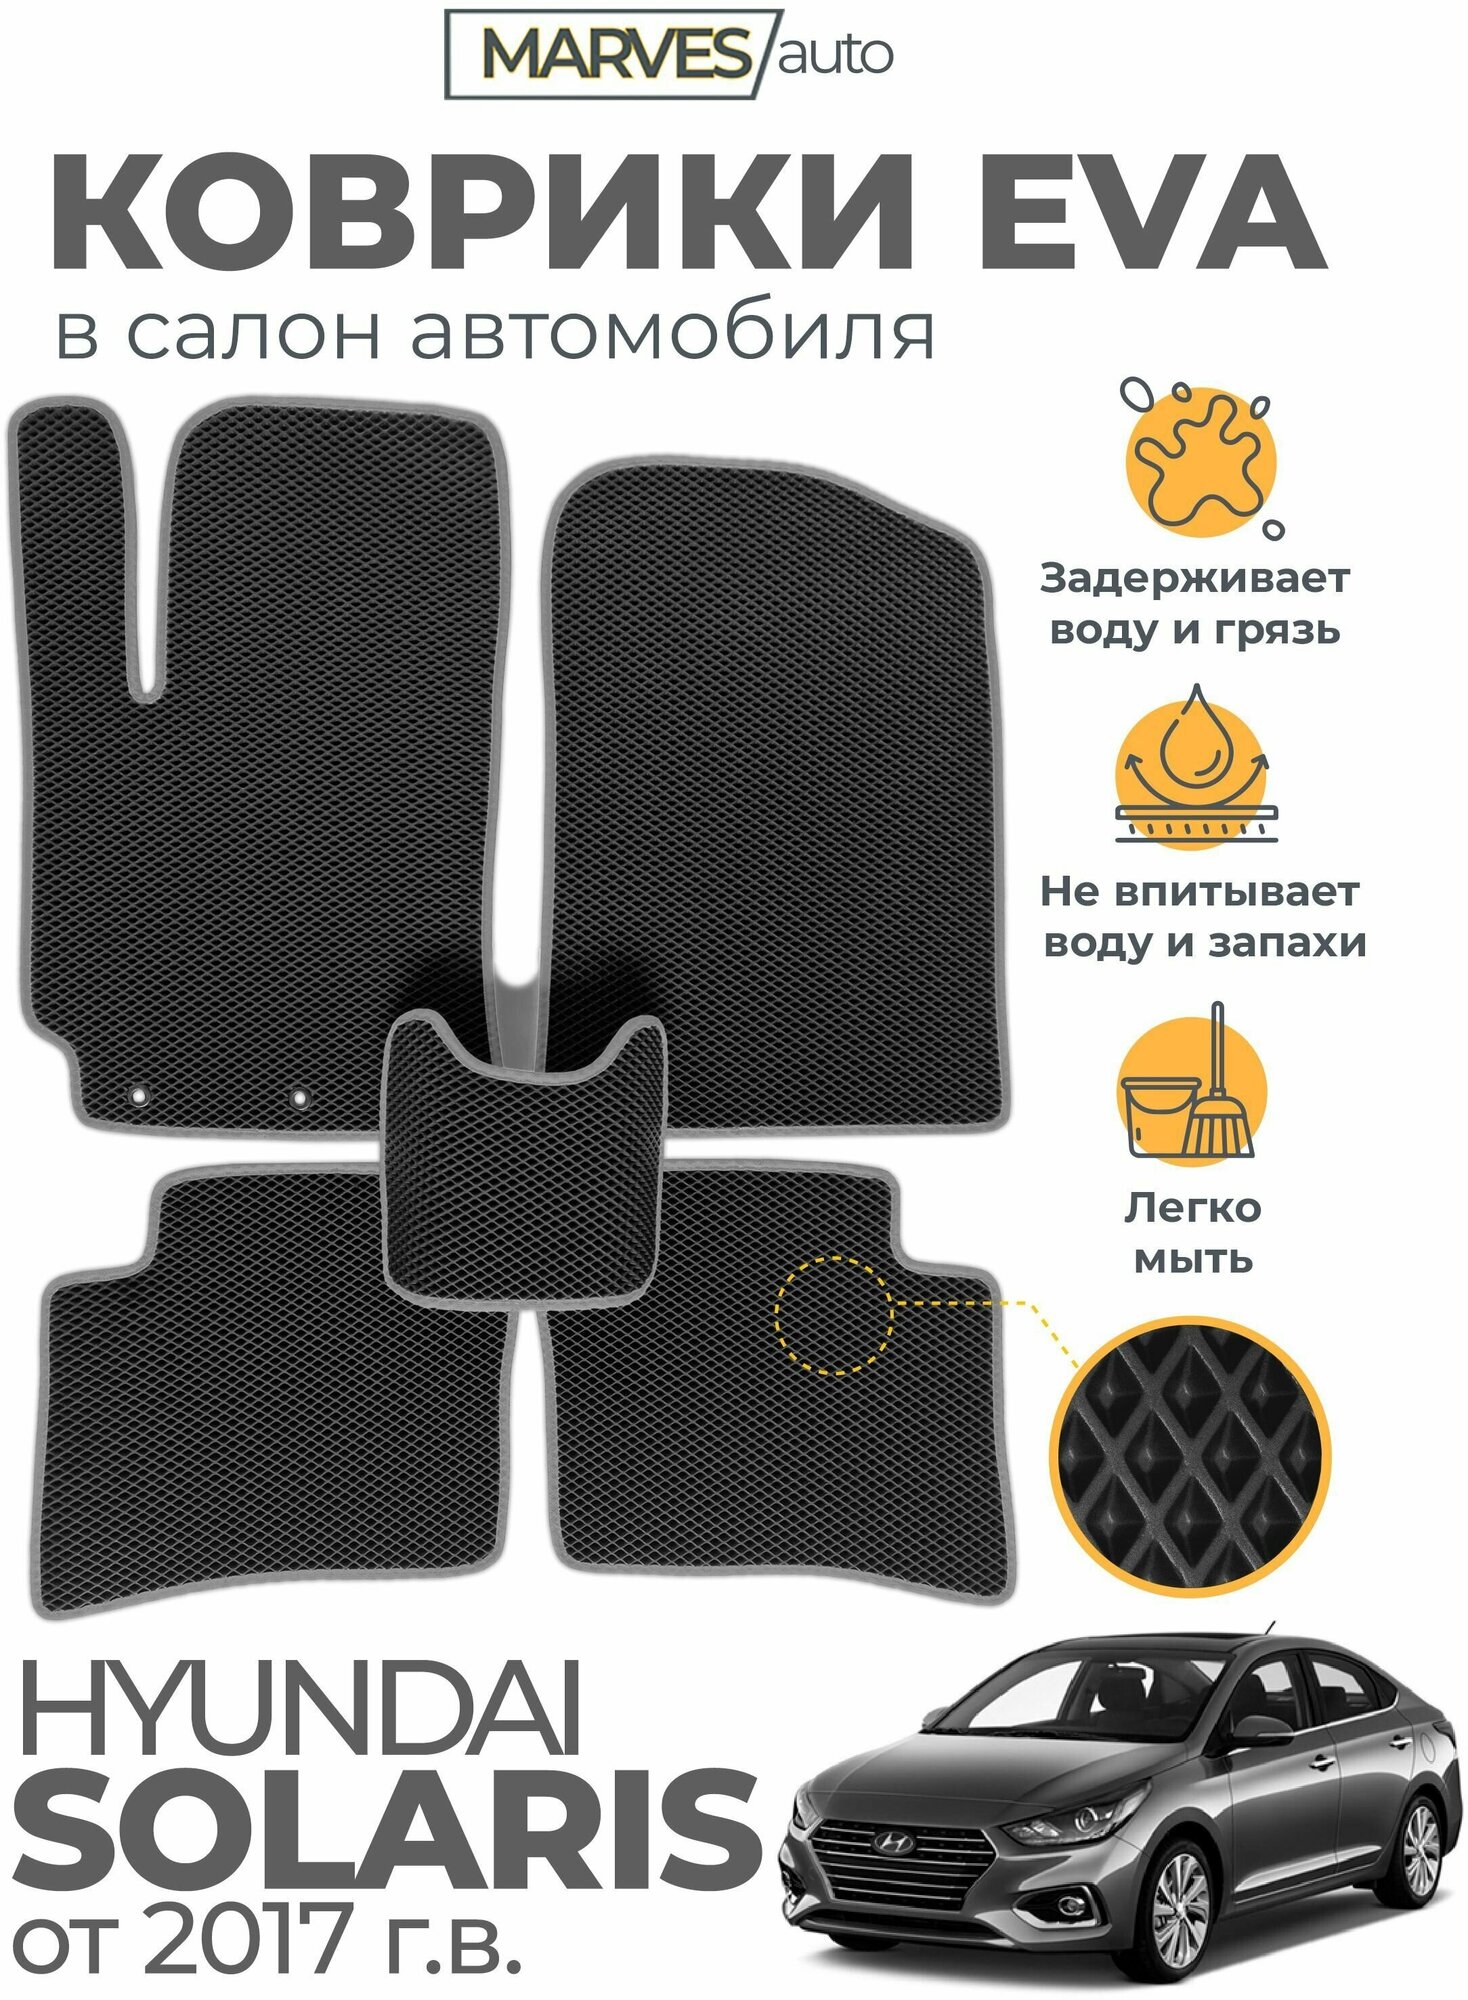 Коврики EVA (ЭВА, ЕВА) в салон автомобиля Hyundai Solaris II от 2017 г, комплект 5 шт, черный ромб/серый кант